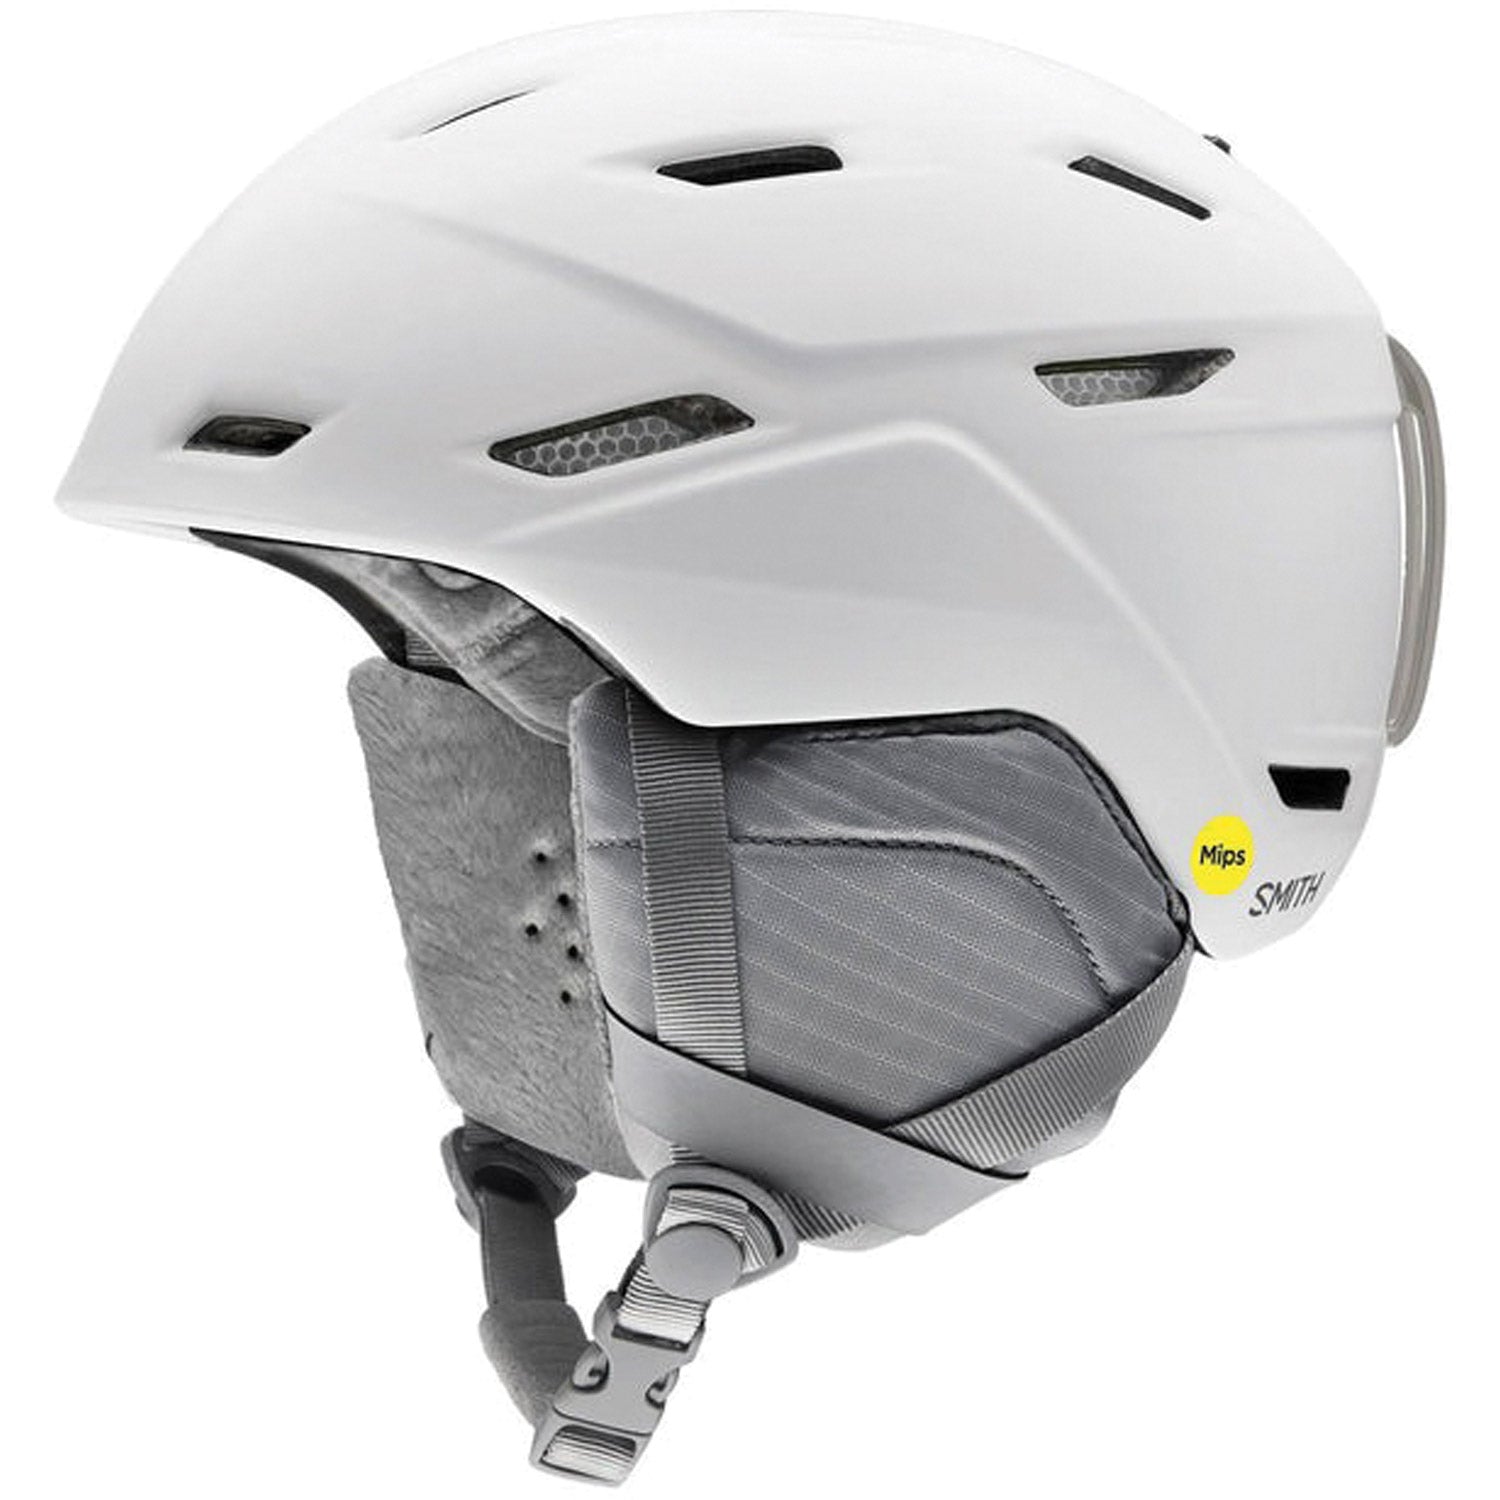 Mirage Mips Womens Snow Helmet